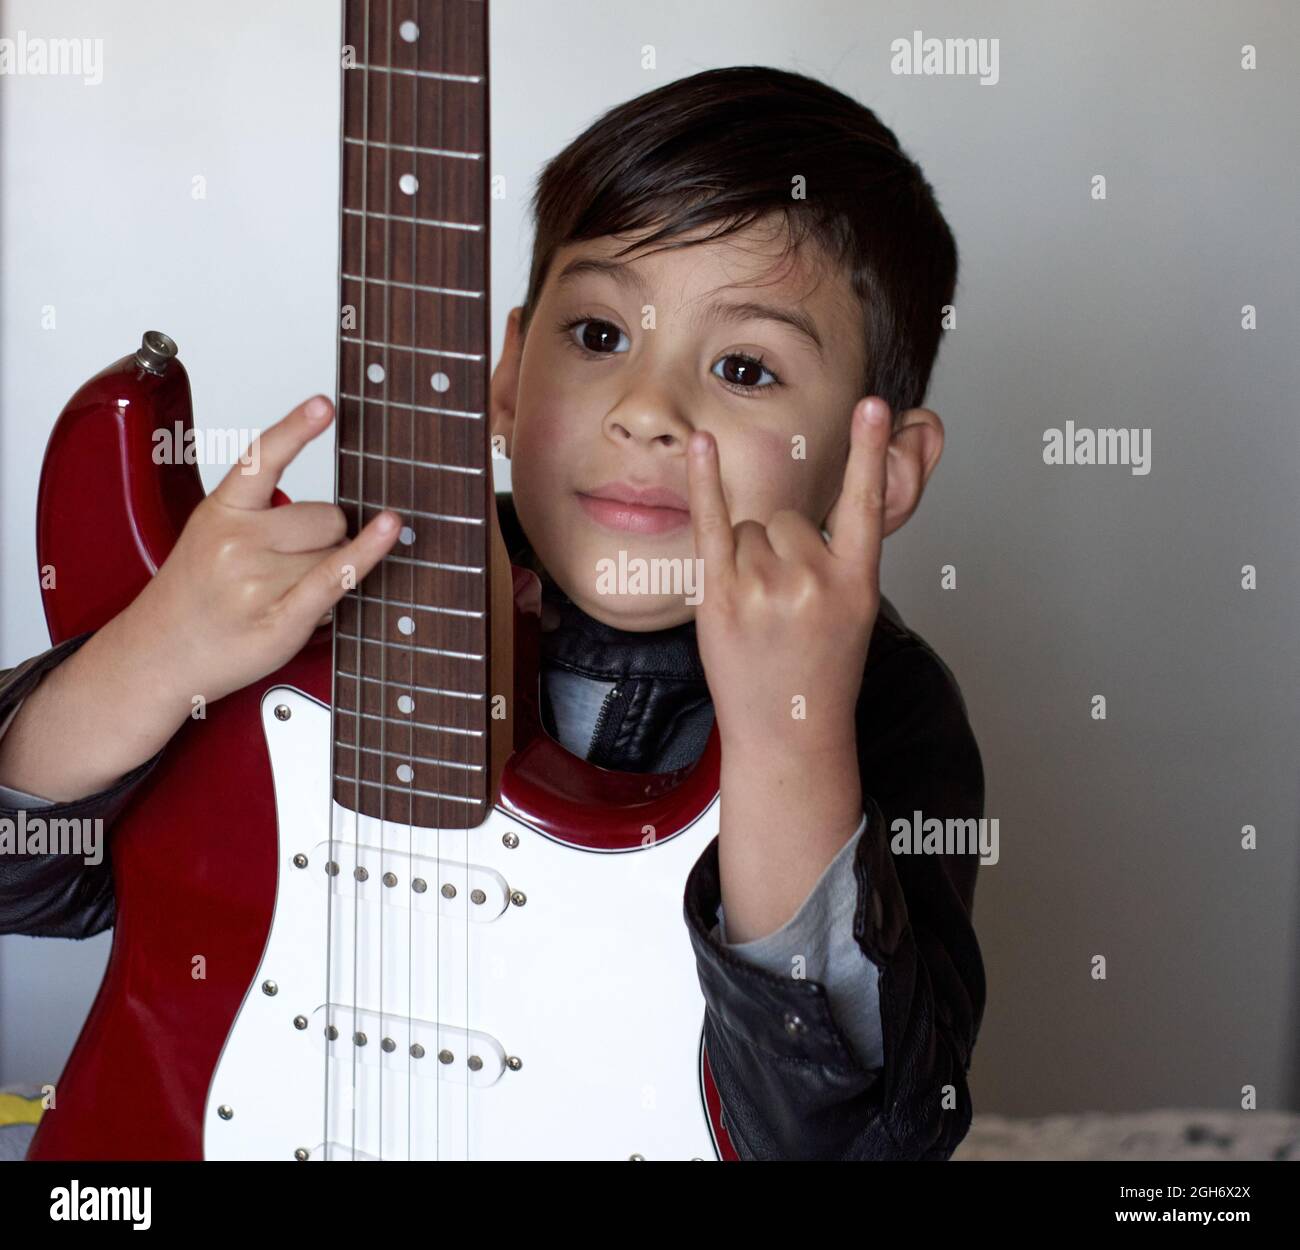 Un petit garçon hispanique montre des signes Rock and Roll et tient une guitare électrique rouge isolée sur fond blanc. Signe des avertisseurs sonores Banque D'Images